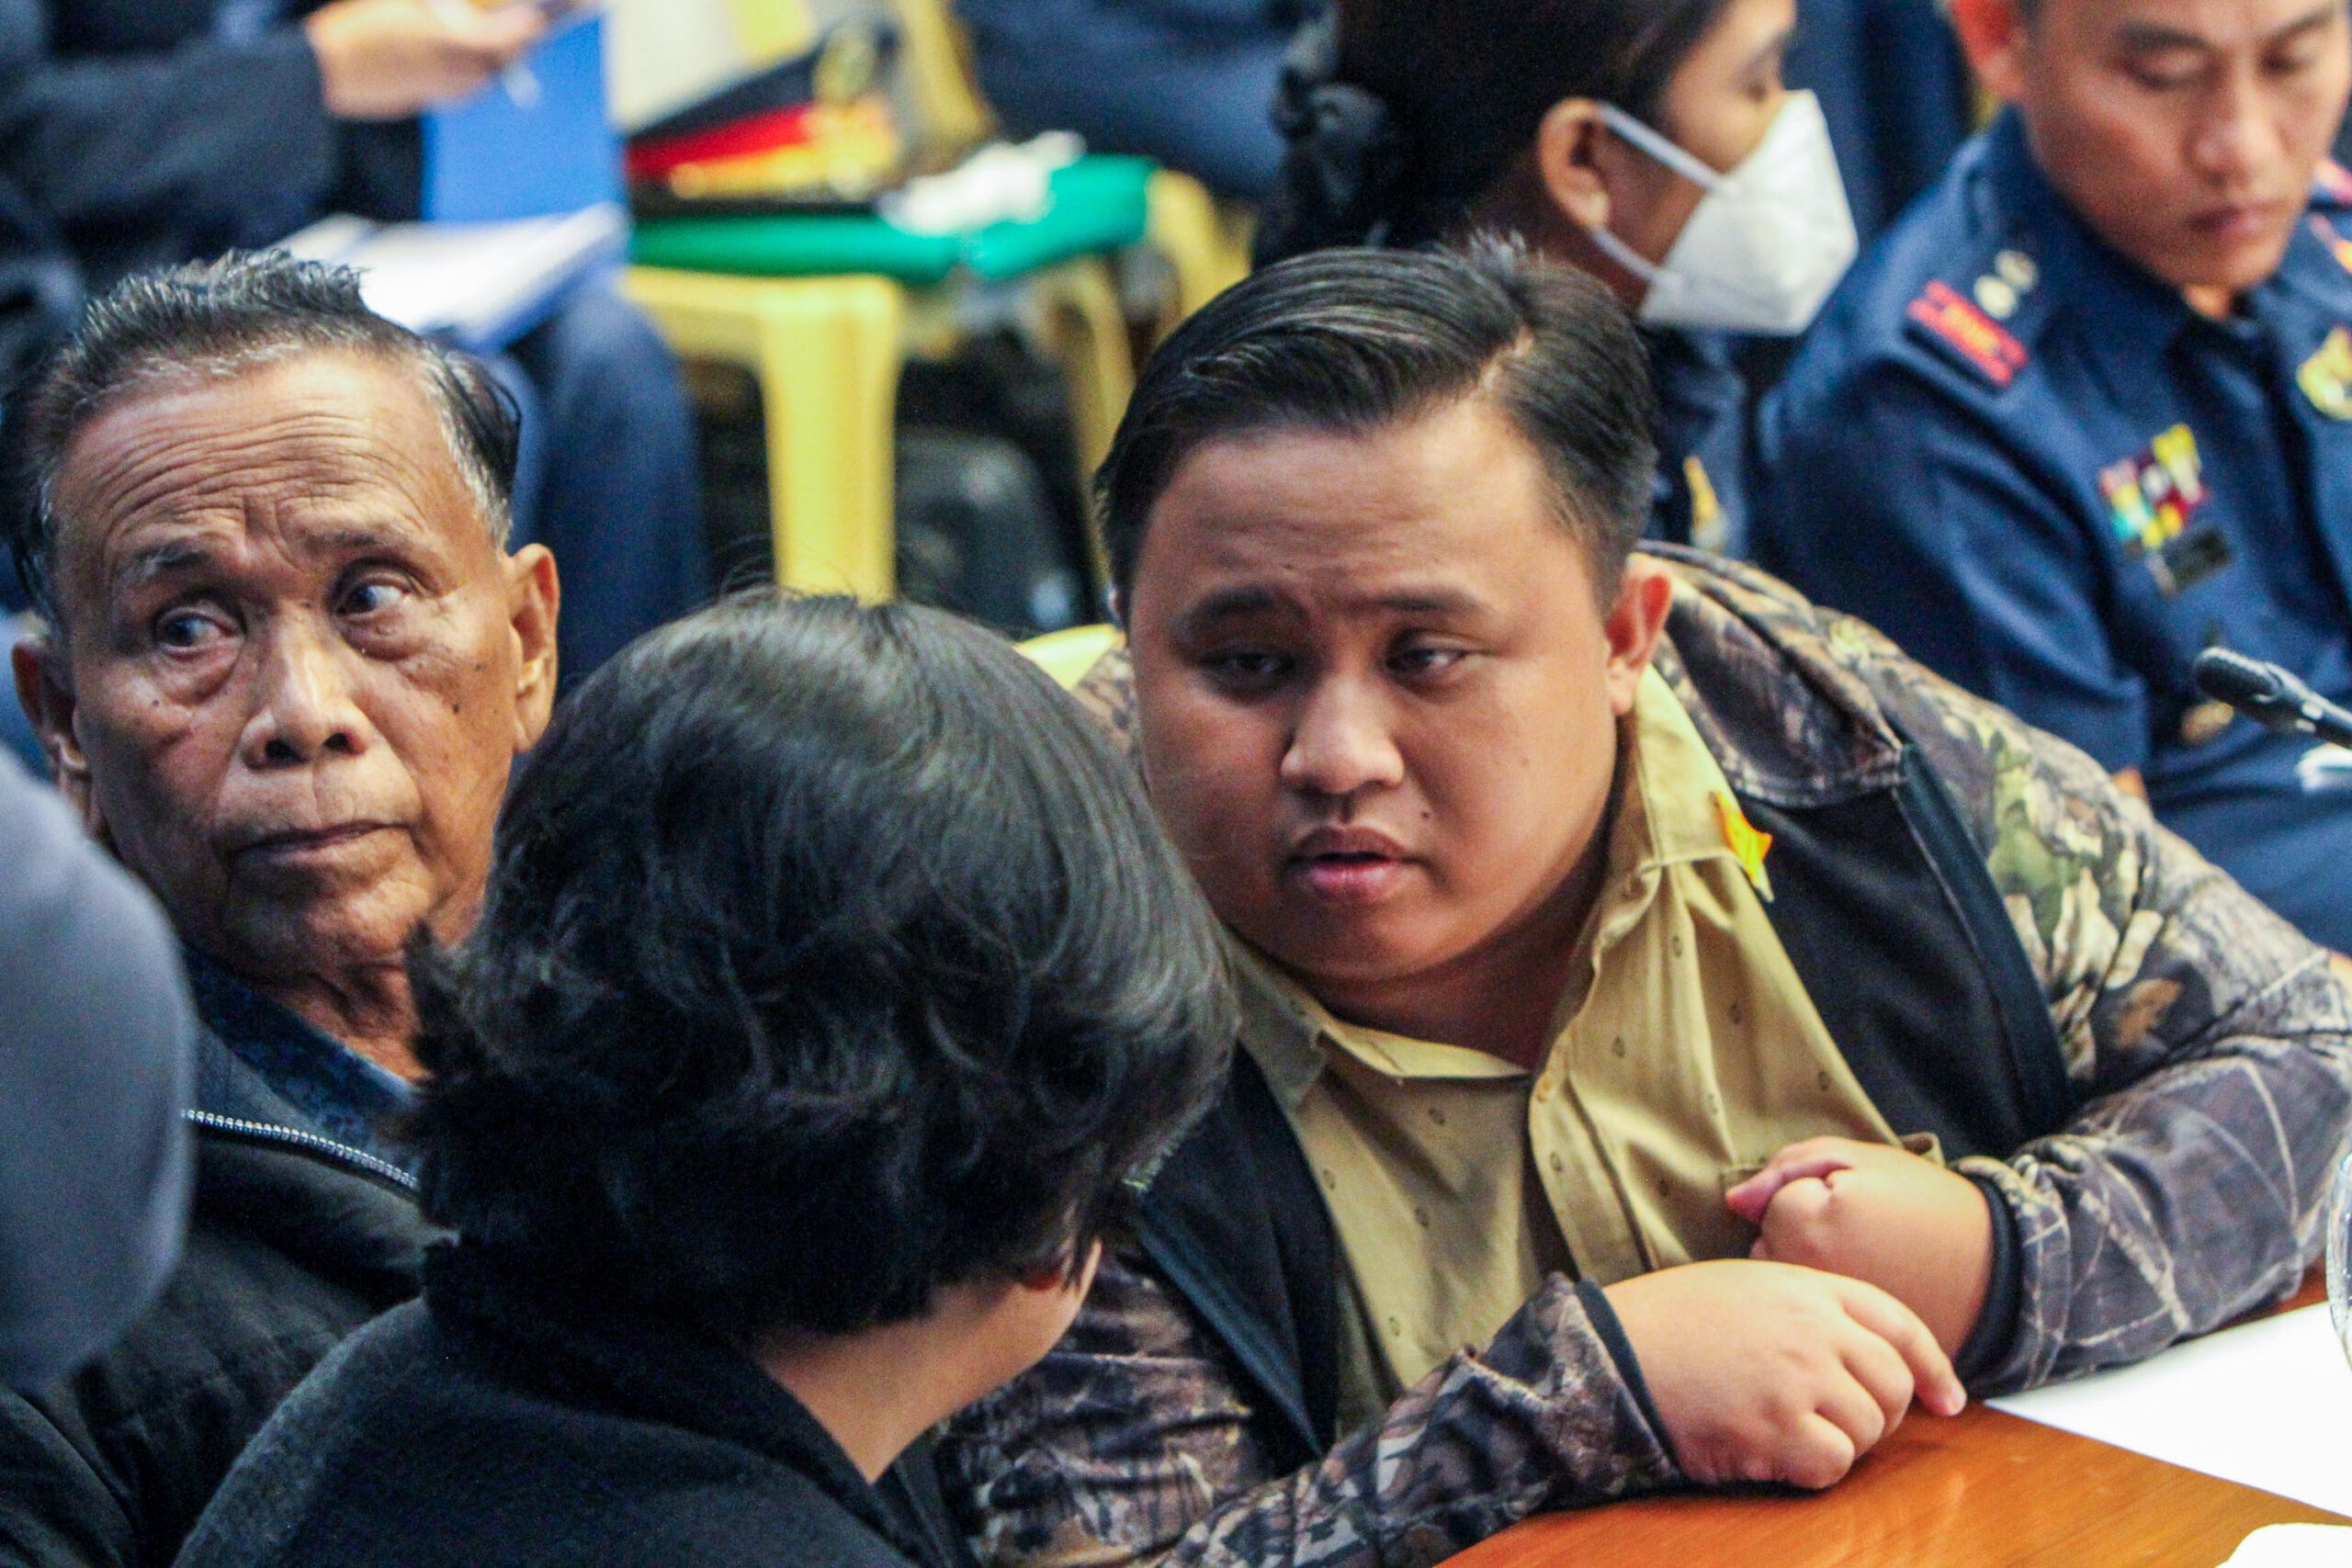 Safety concerns mount as senators grill Surigao del Norte ‘cult’ leaders